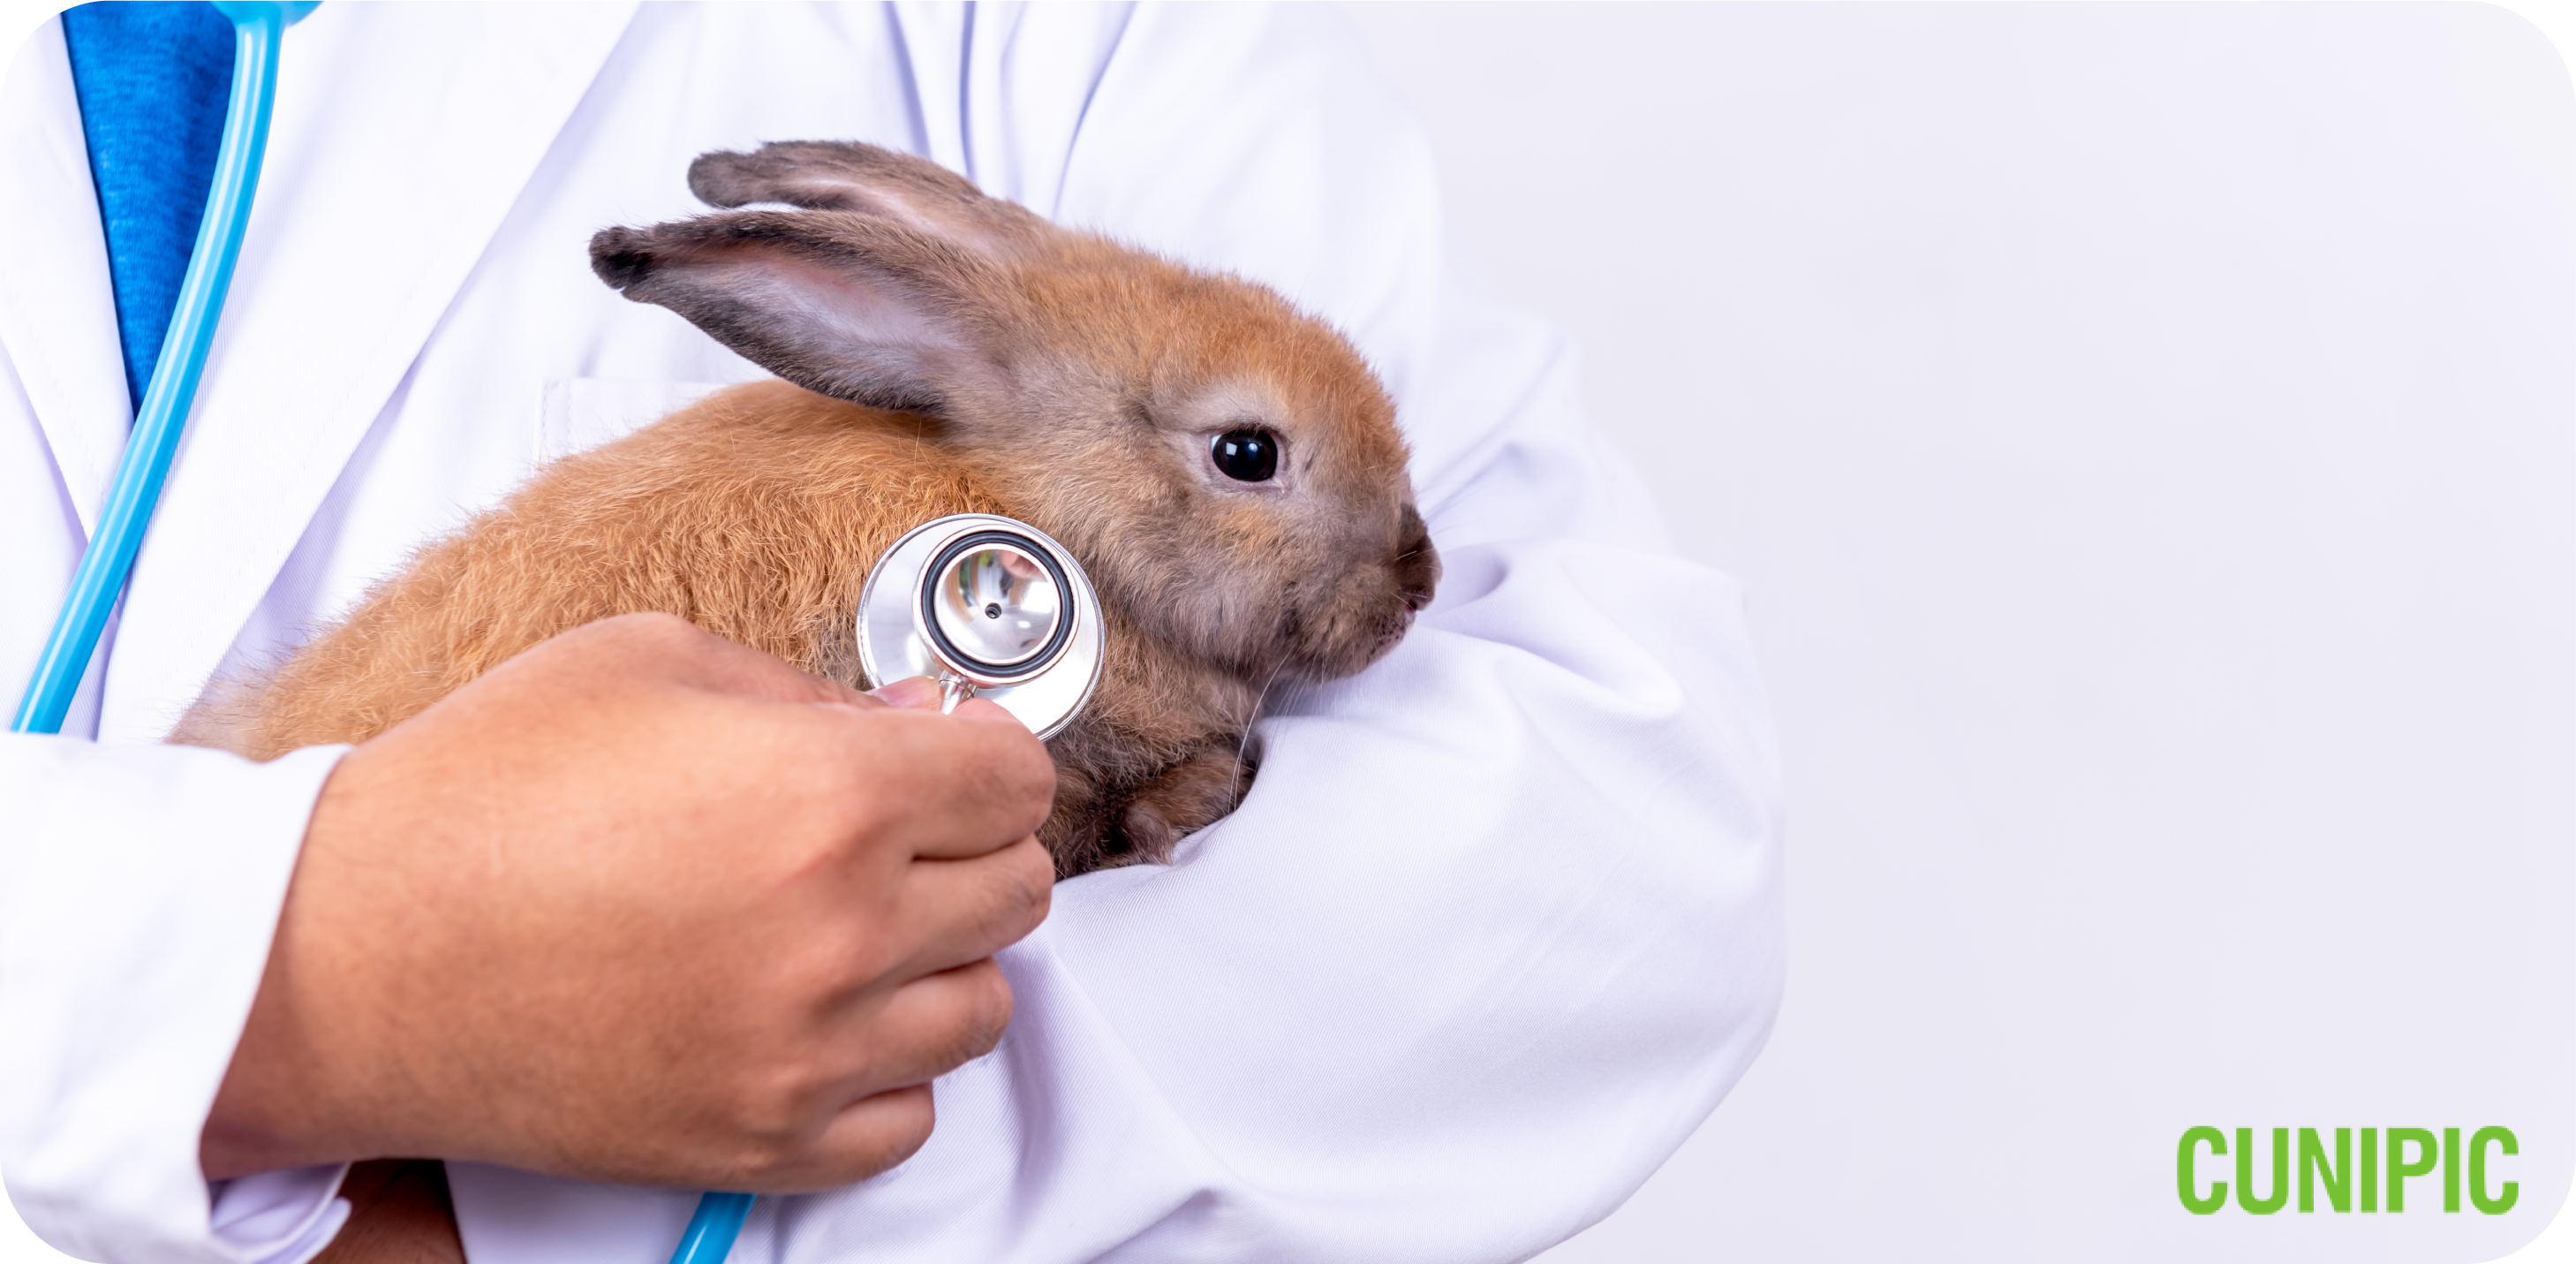 Dwarf Bunny Health Issues